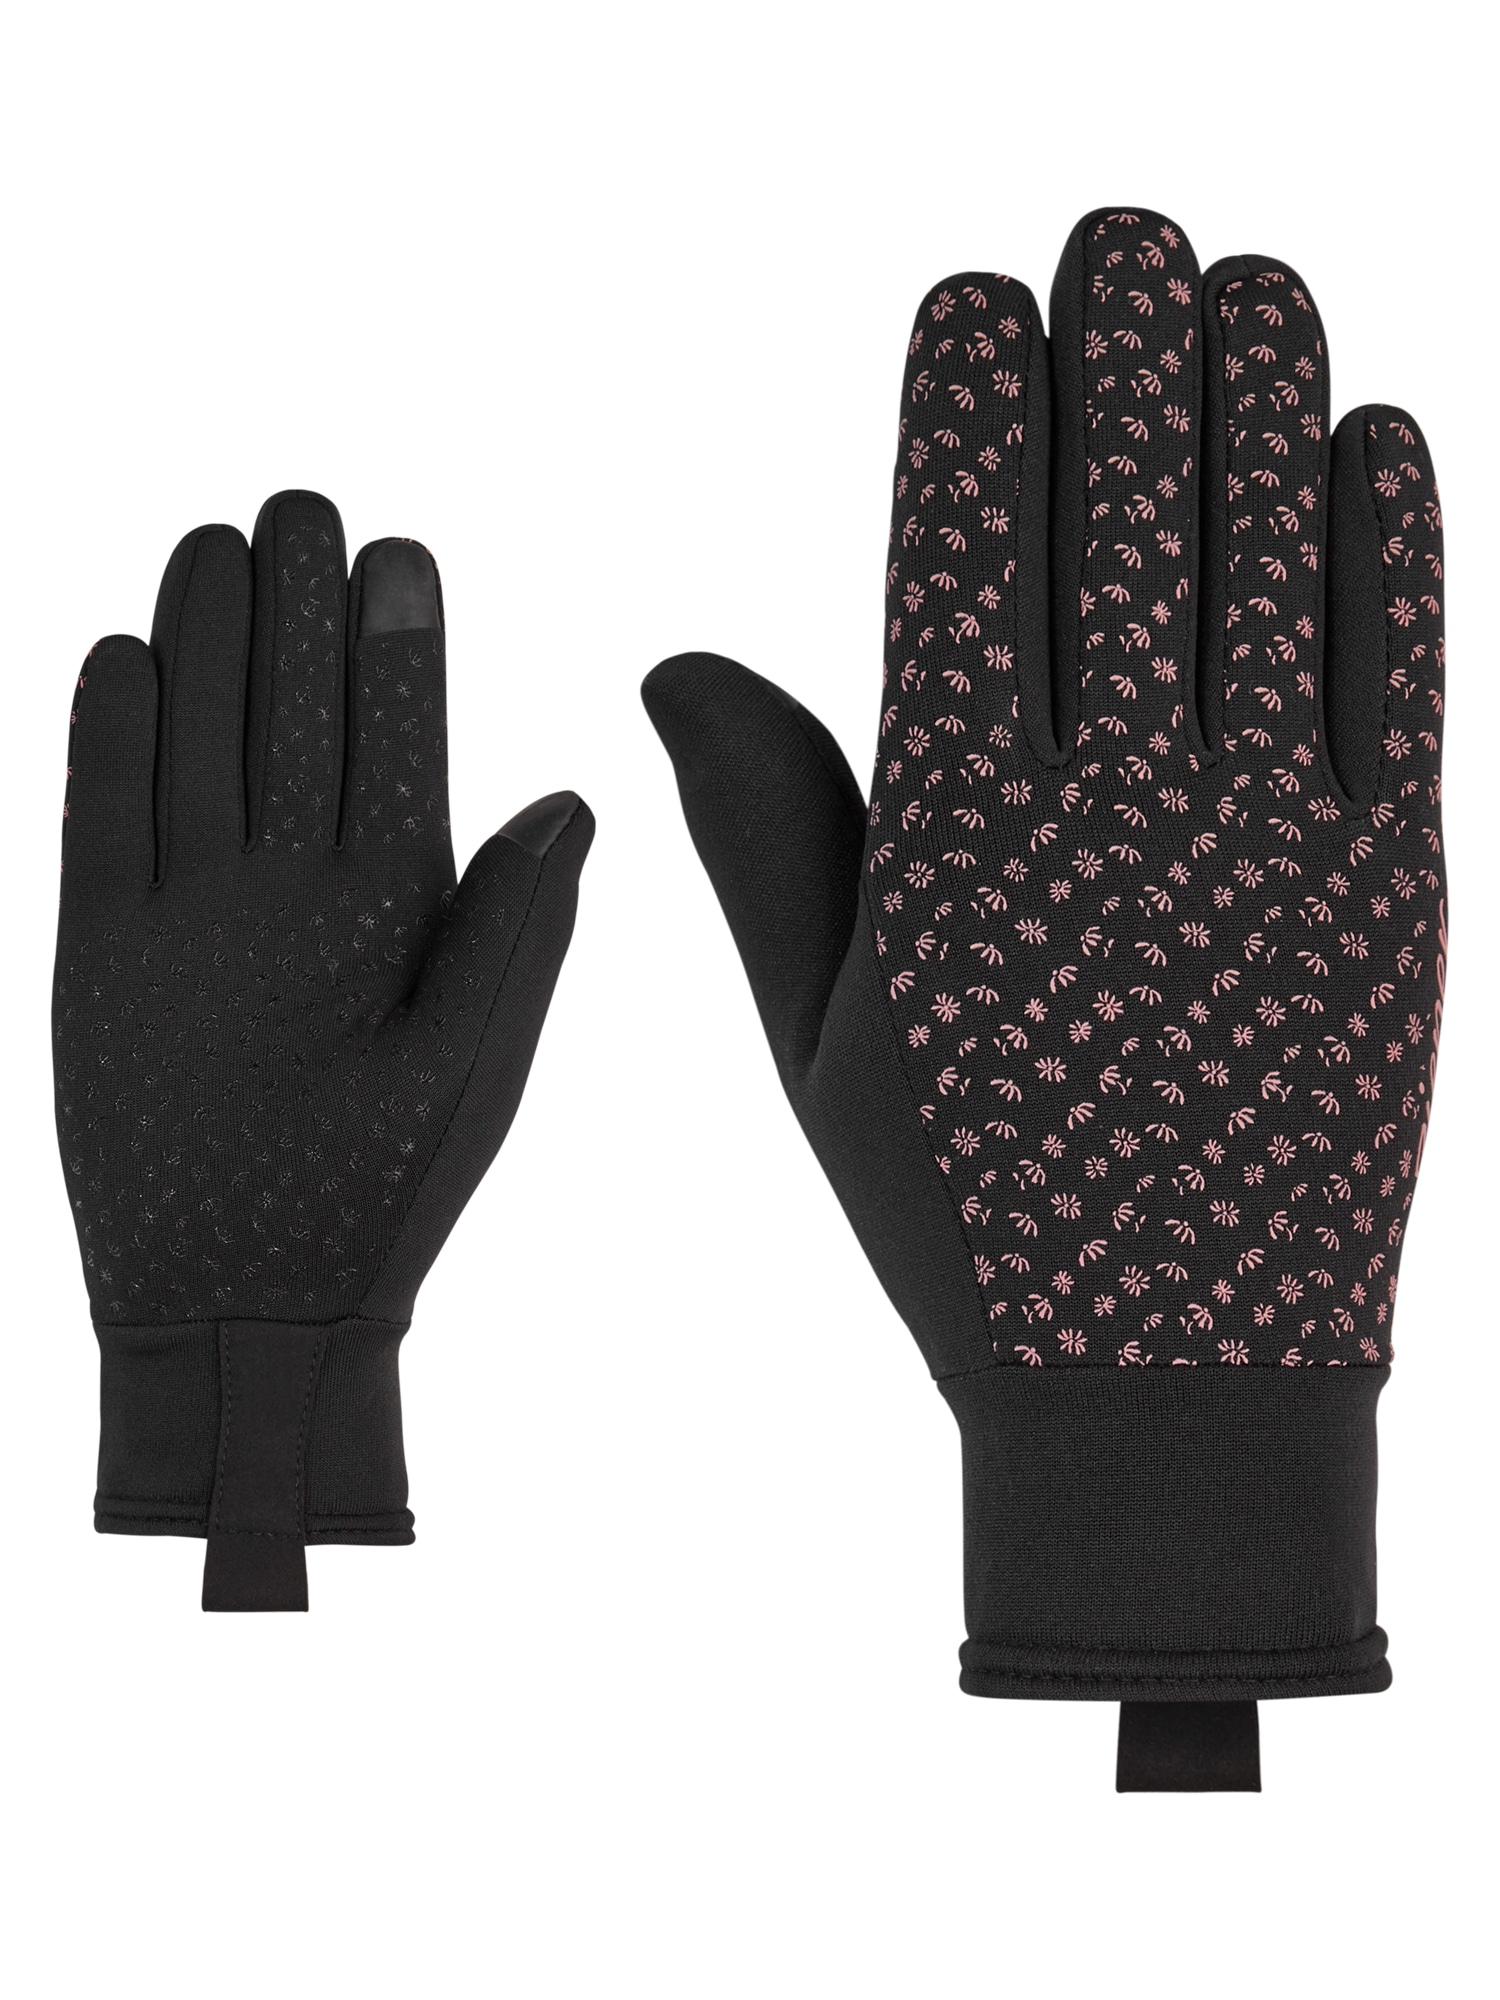 Handschuhe für Damen online kaufen Ackermann | Handschuh bei